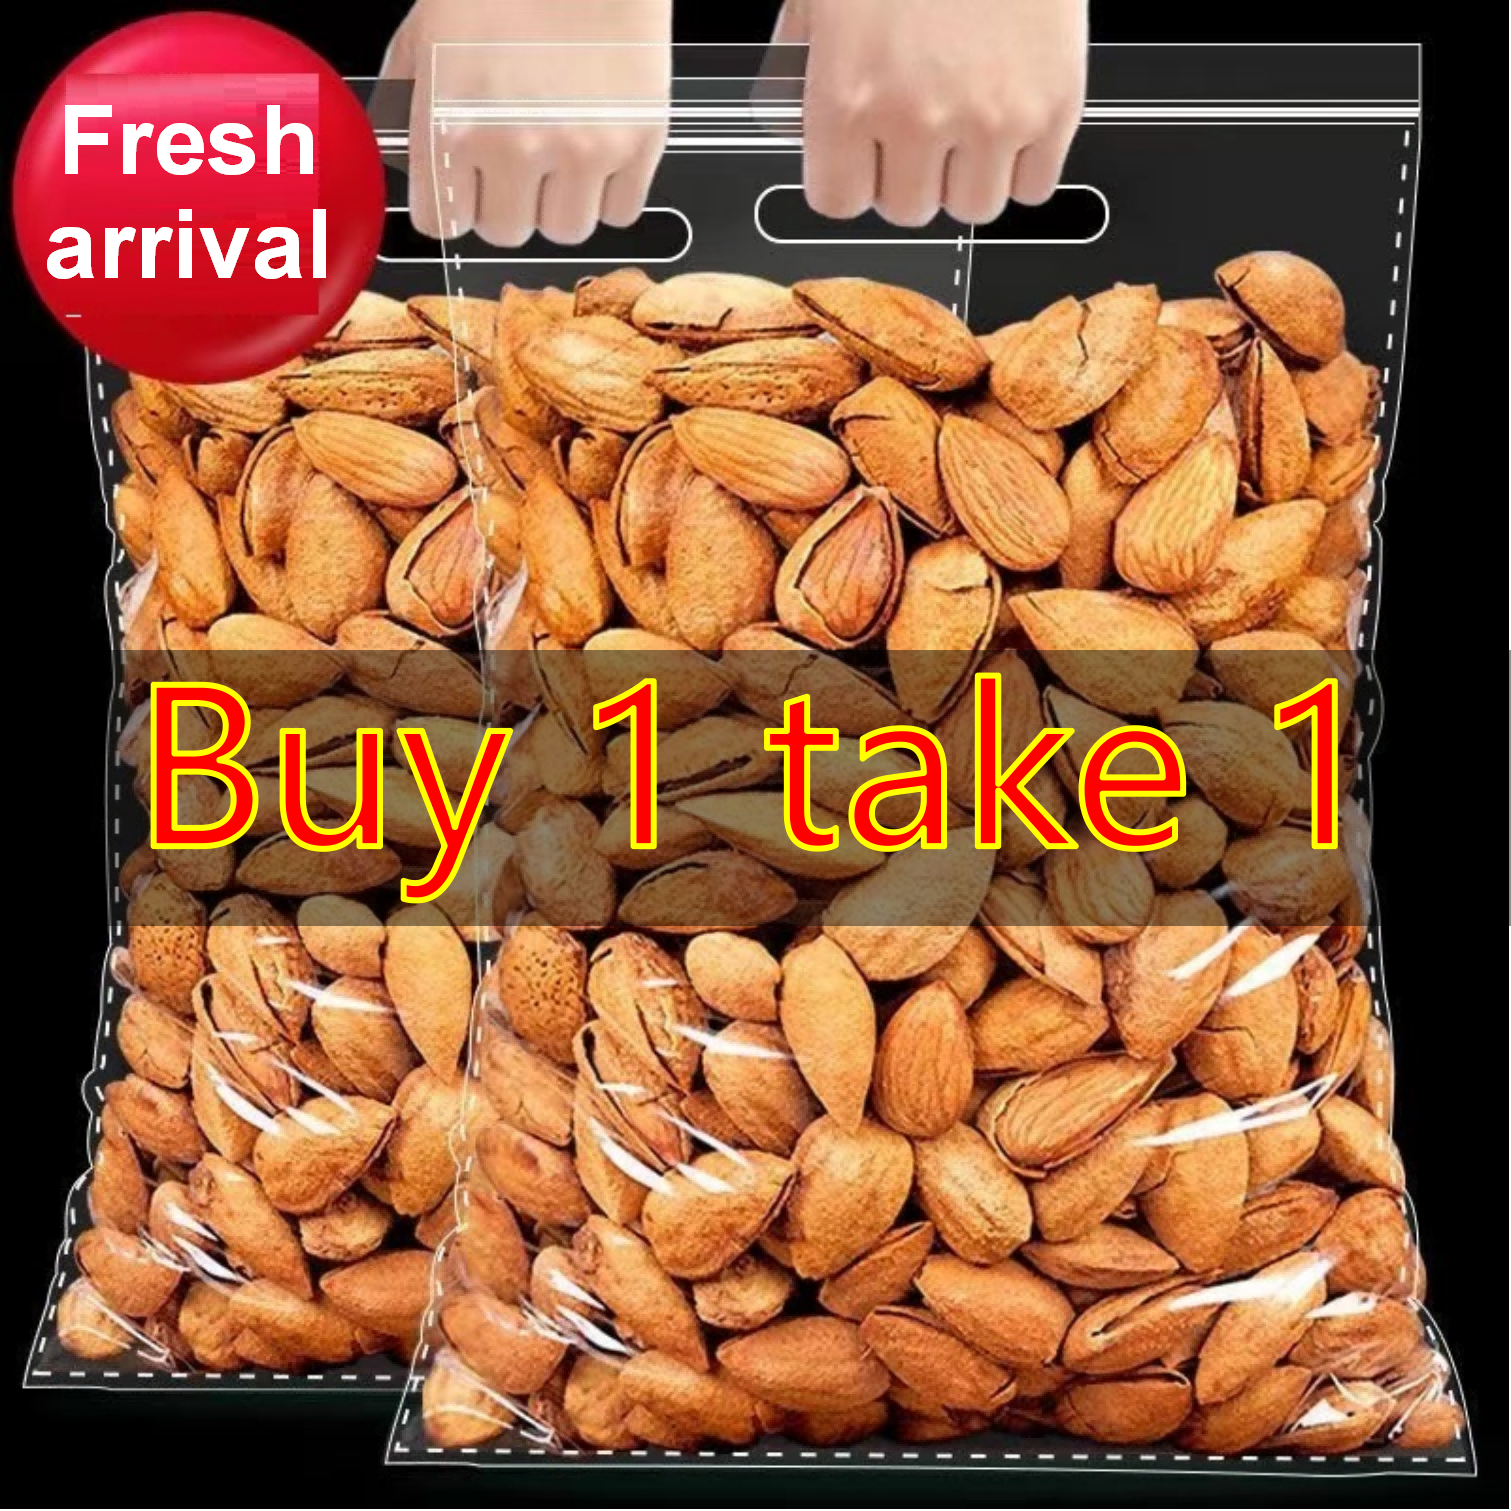 Replying to @✧ ChooseJOY ✧ MUKBANG 1 KILO MIXED NUTS AND DRIED FRUITS